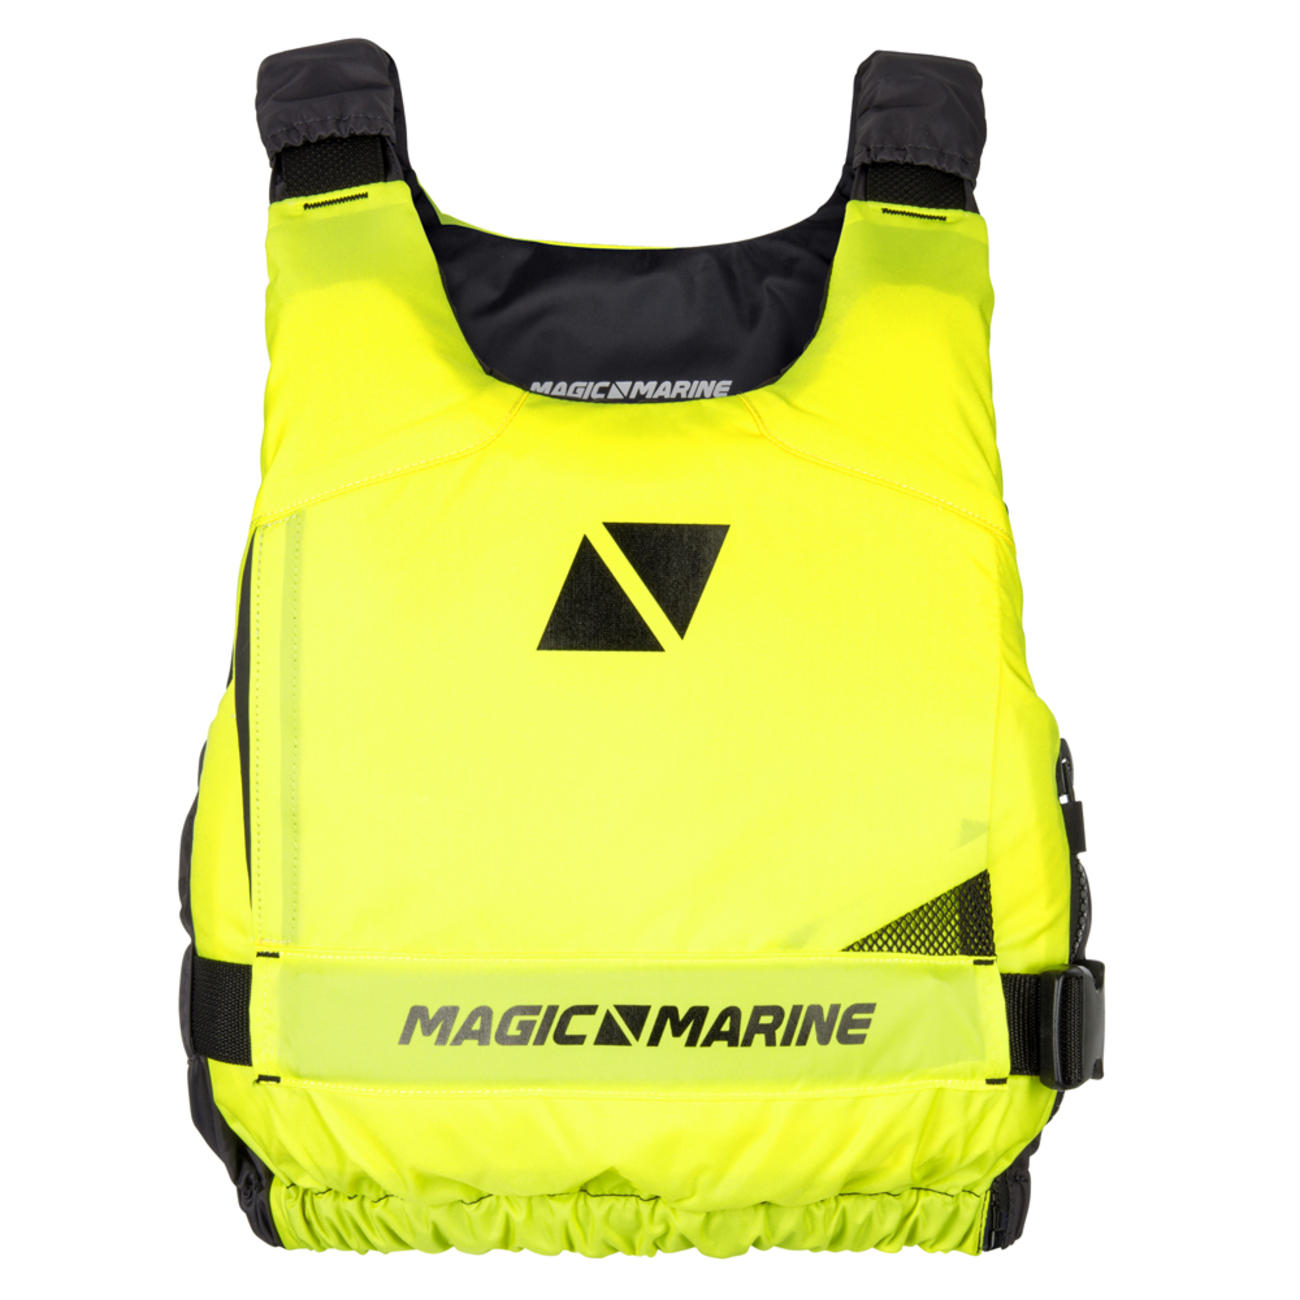 MAGIC MARINE(マジックマリン) Ultimate Buoyancy Aid Szip ユニセックス [15004.180055] メンズ  マリンスポーツウェア ライフジャケットの通販ならちょっとヨットマリン